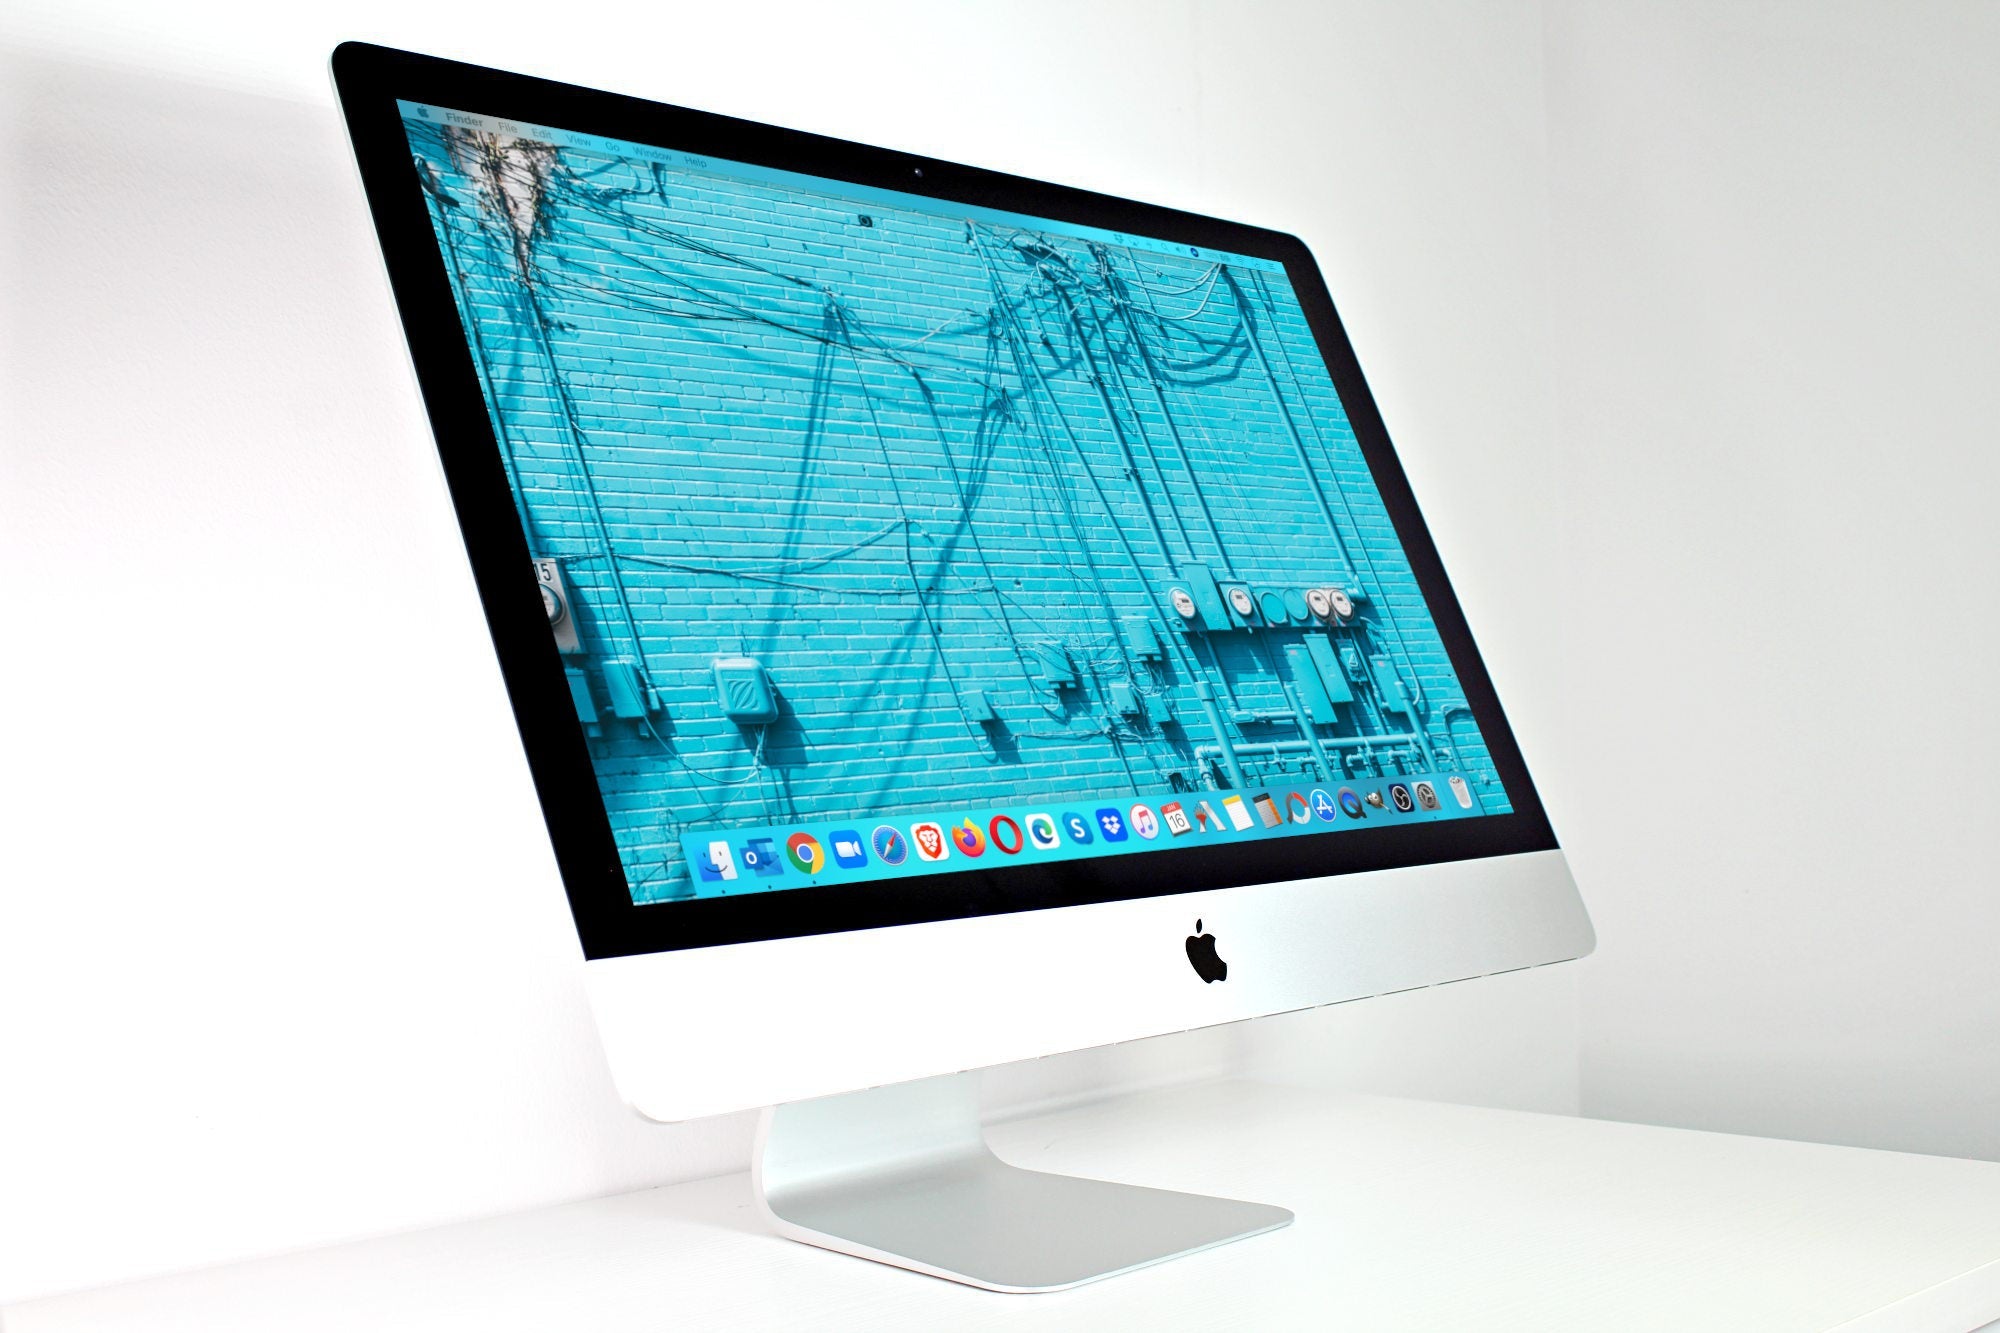 Apple iMac (27-inch, 8GB, 1TB Storage) Silver (Renewed)